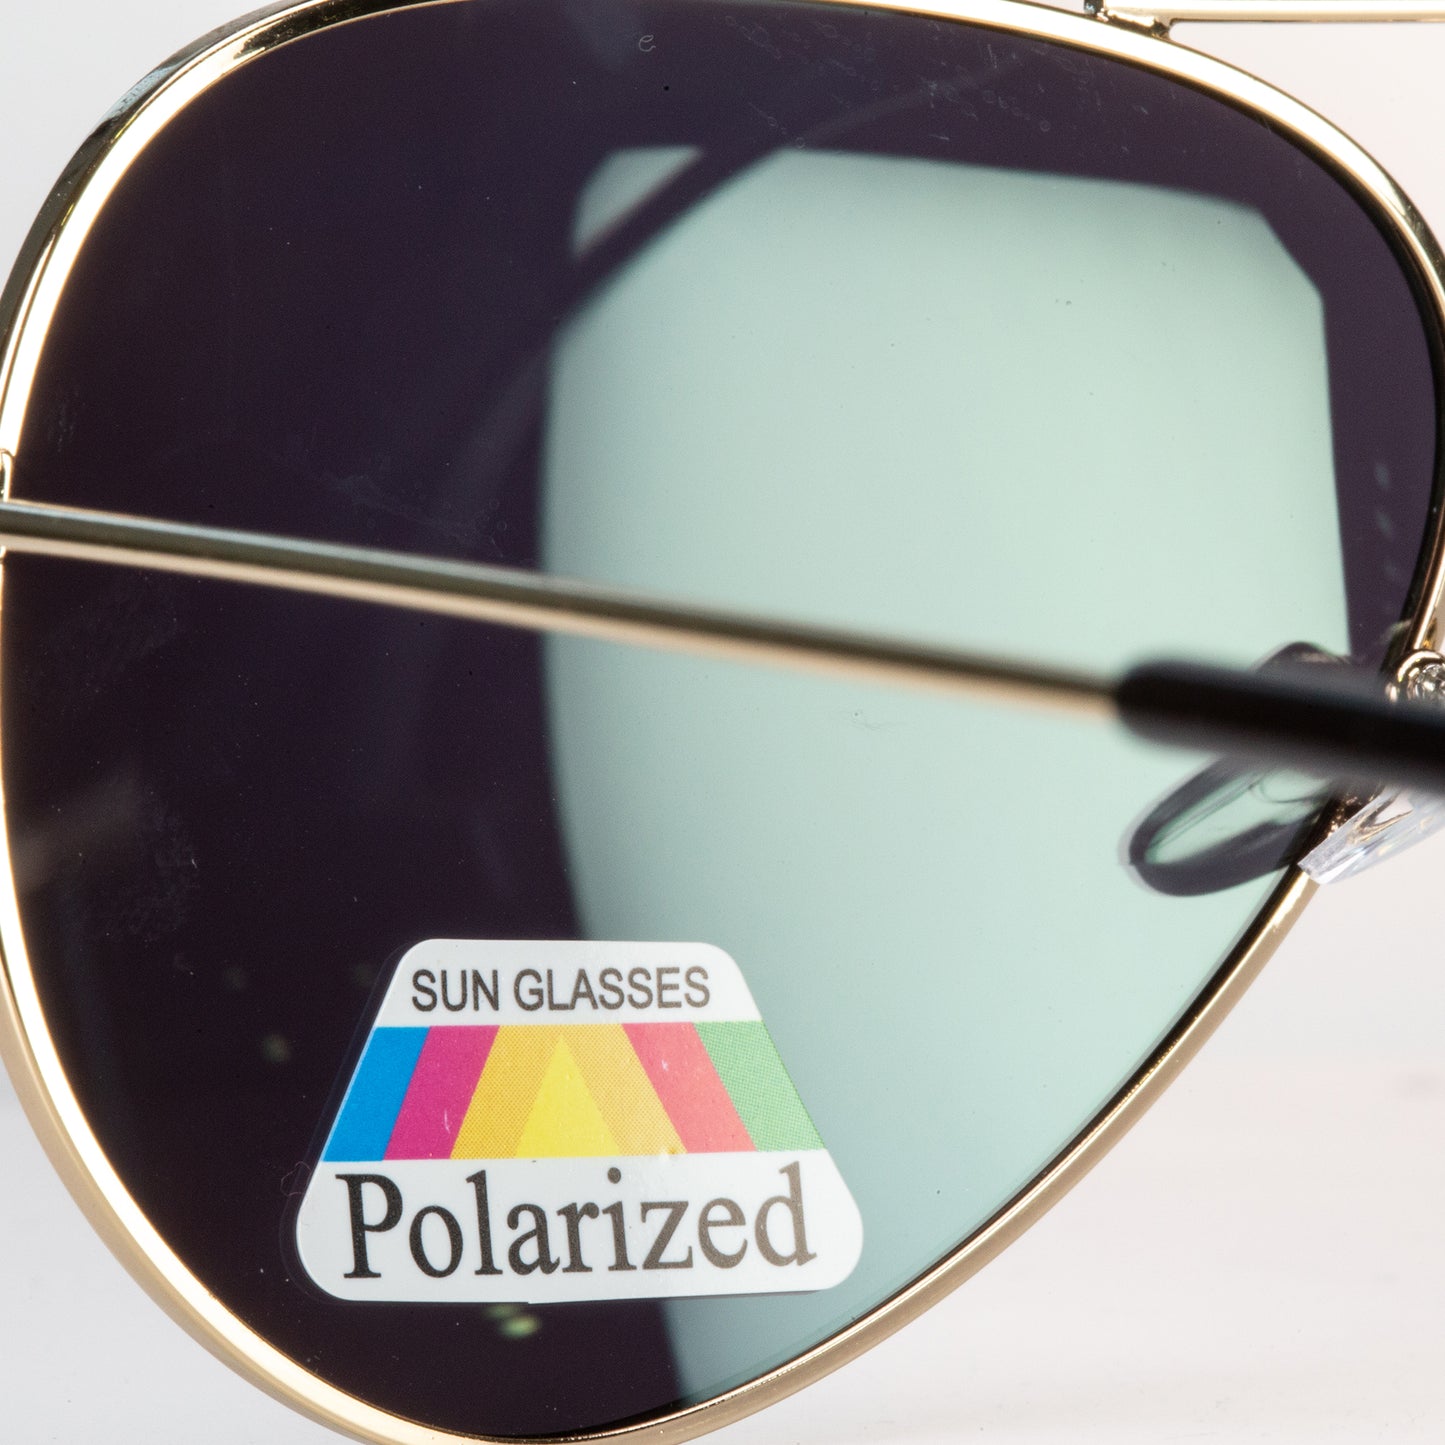 Emporia Italy - série Aviator "DŽUNGLE", polarizované sluneční brýle s pevným pouzdrem a čisticím hadříkem, žlutozelené čočky, obroučky zlaté barvy